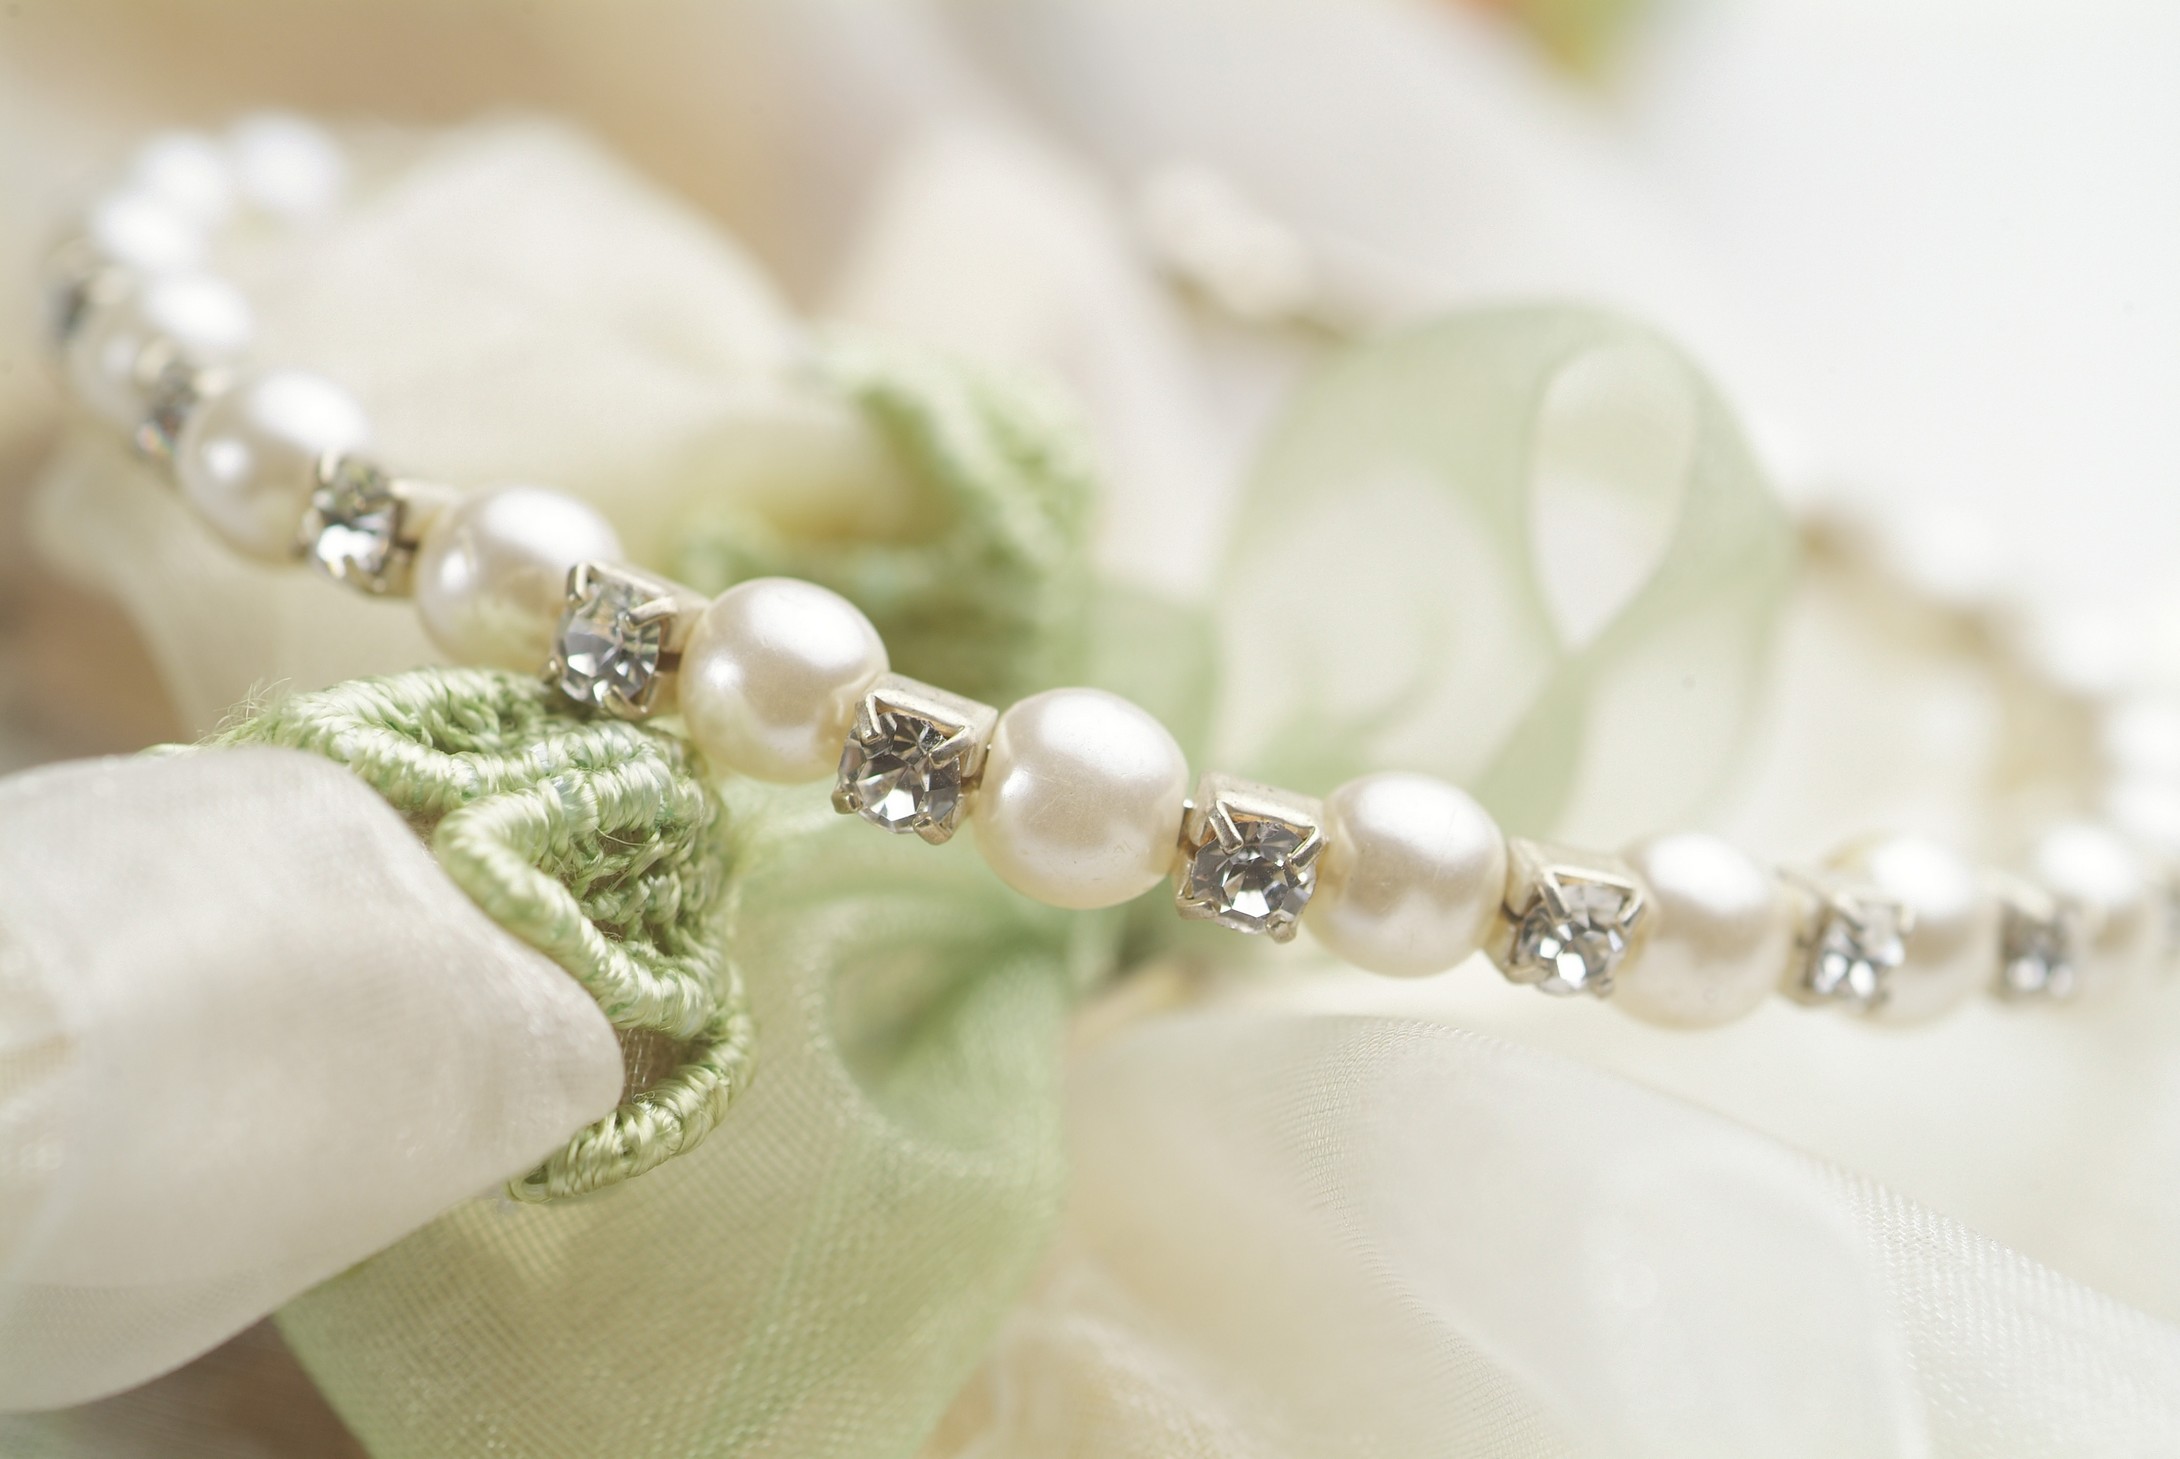 珍珠保养:日常如何养护珍珠首饰?